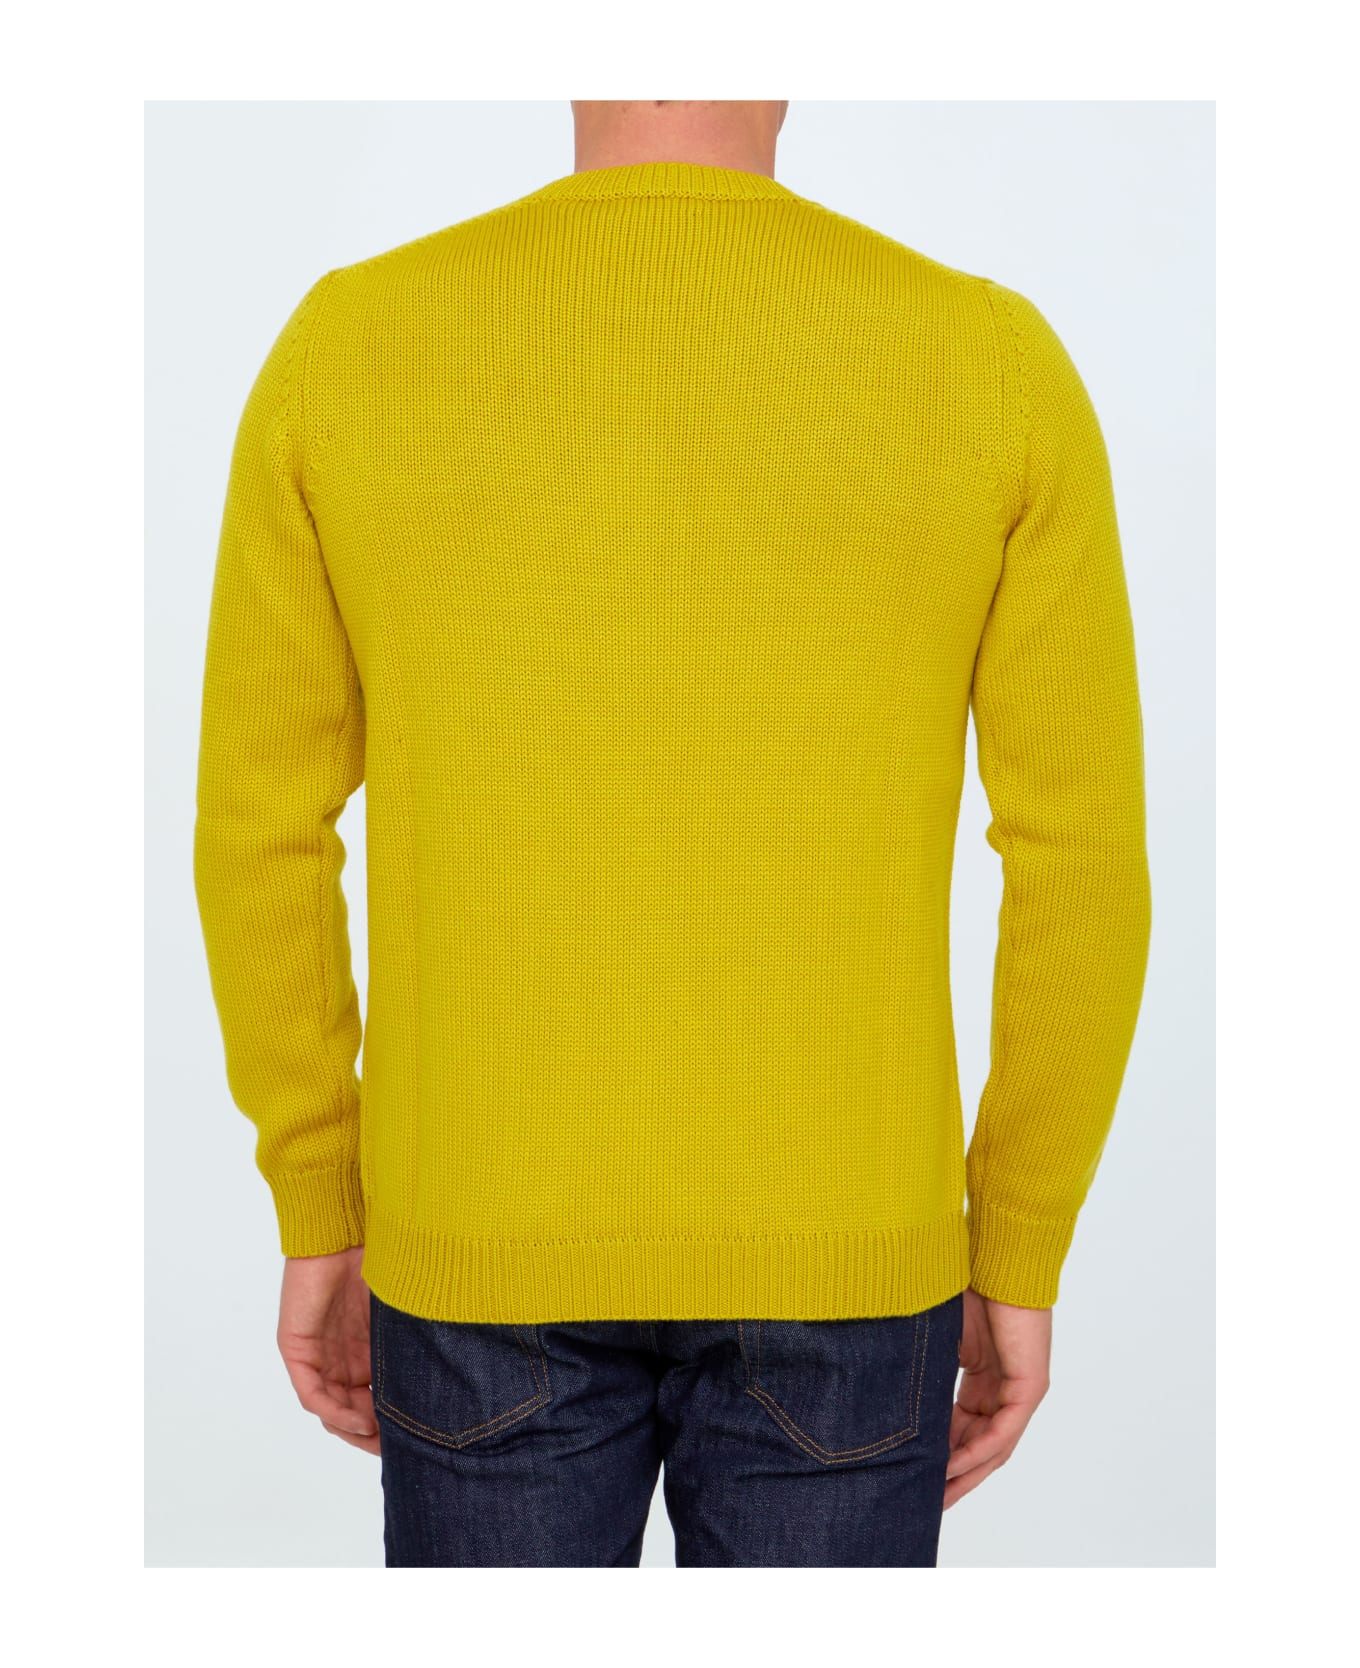 Roberto Collina Yellow Merino Wool Sweater - YELLOW ニットウェア